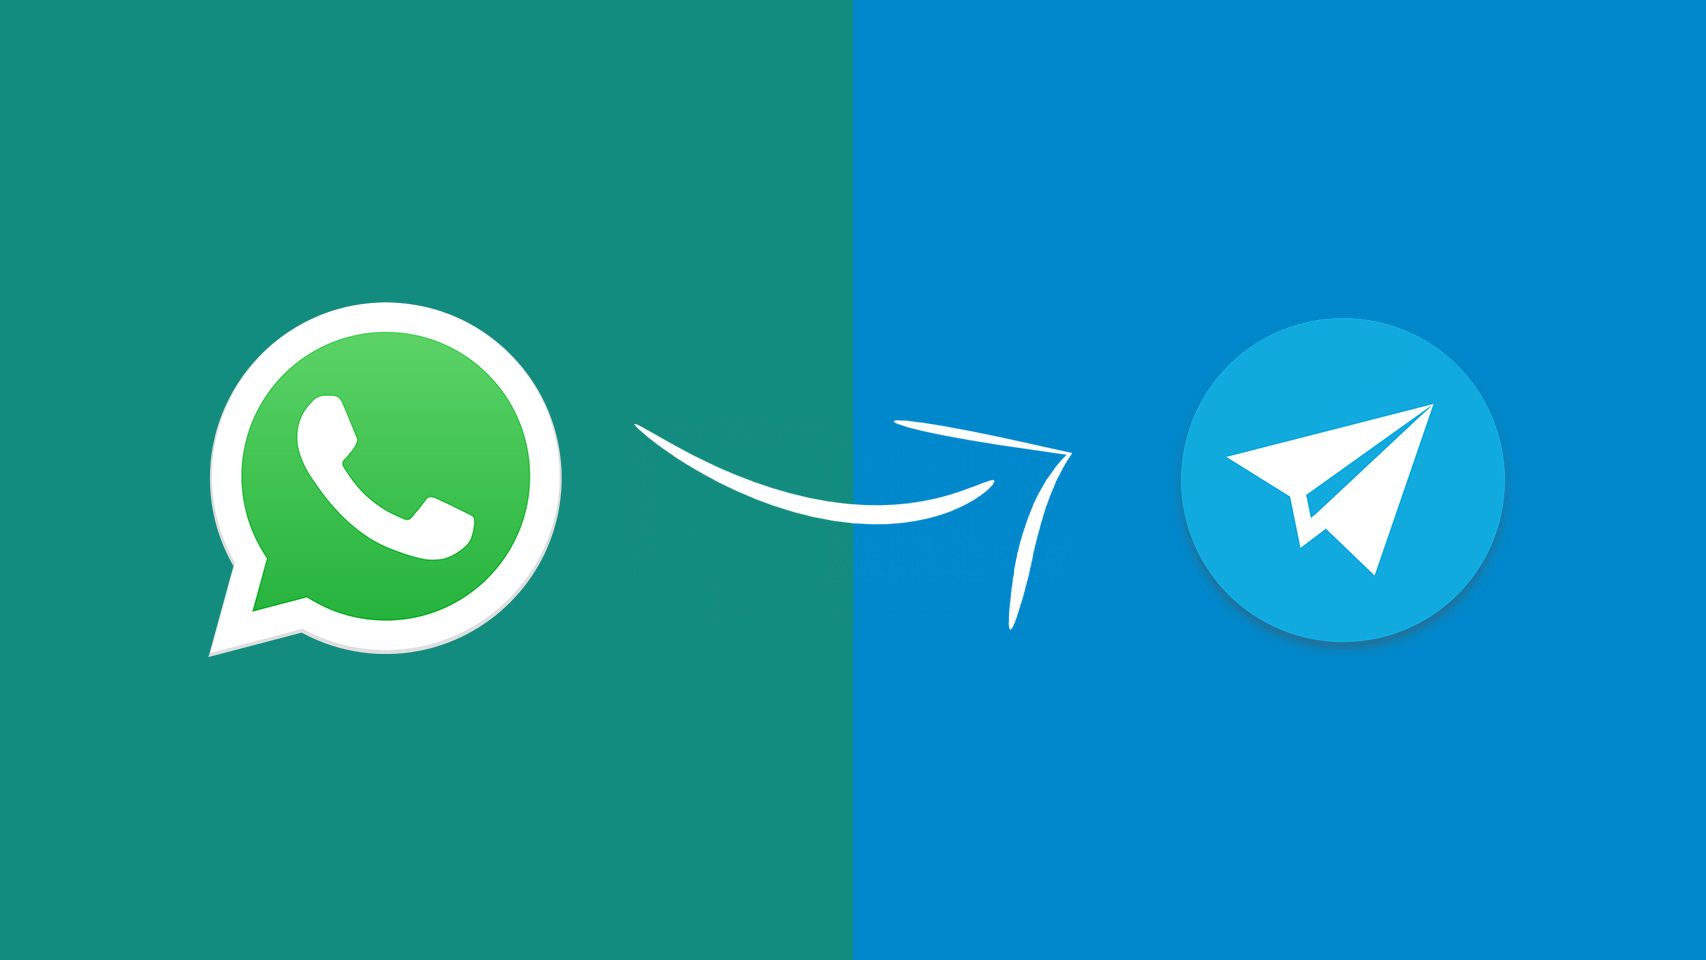 iconos de WhatsApp y Telegram.